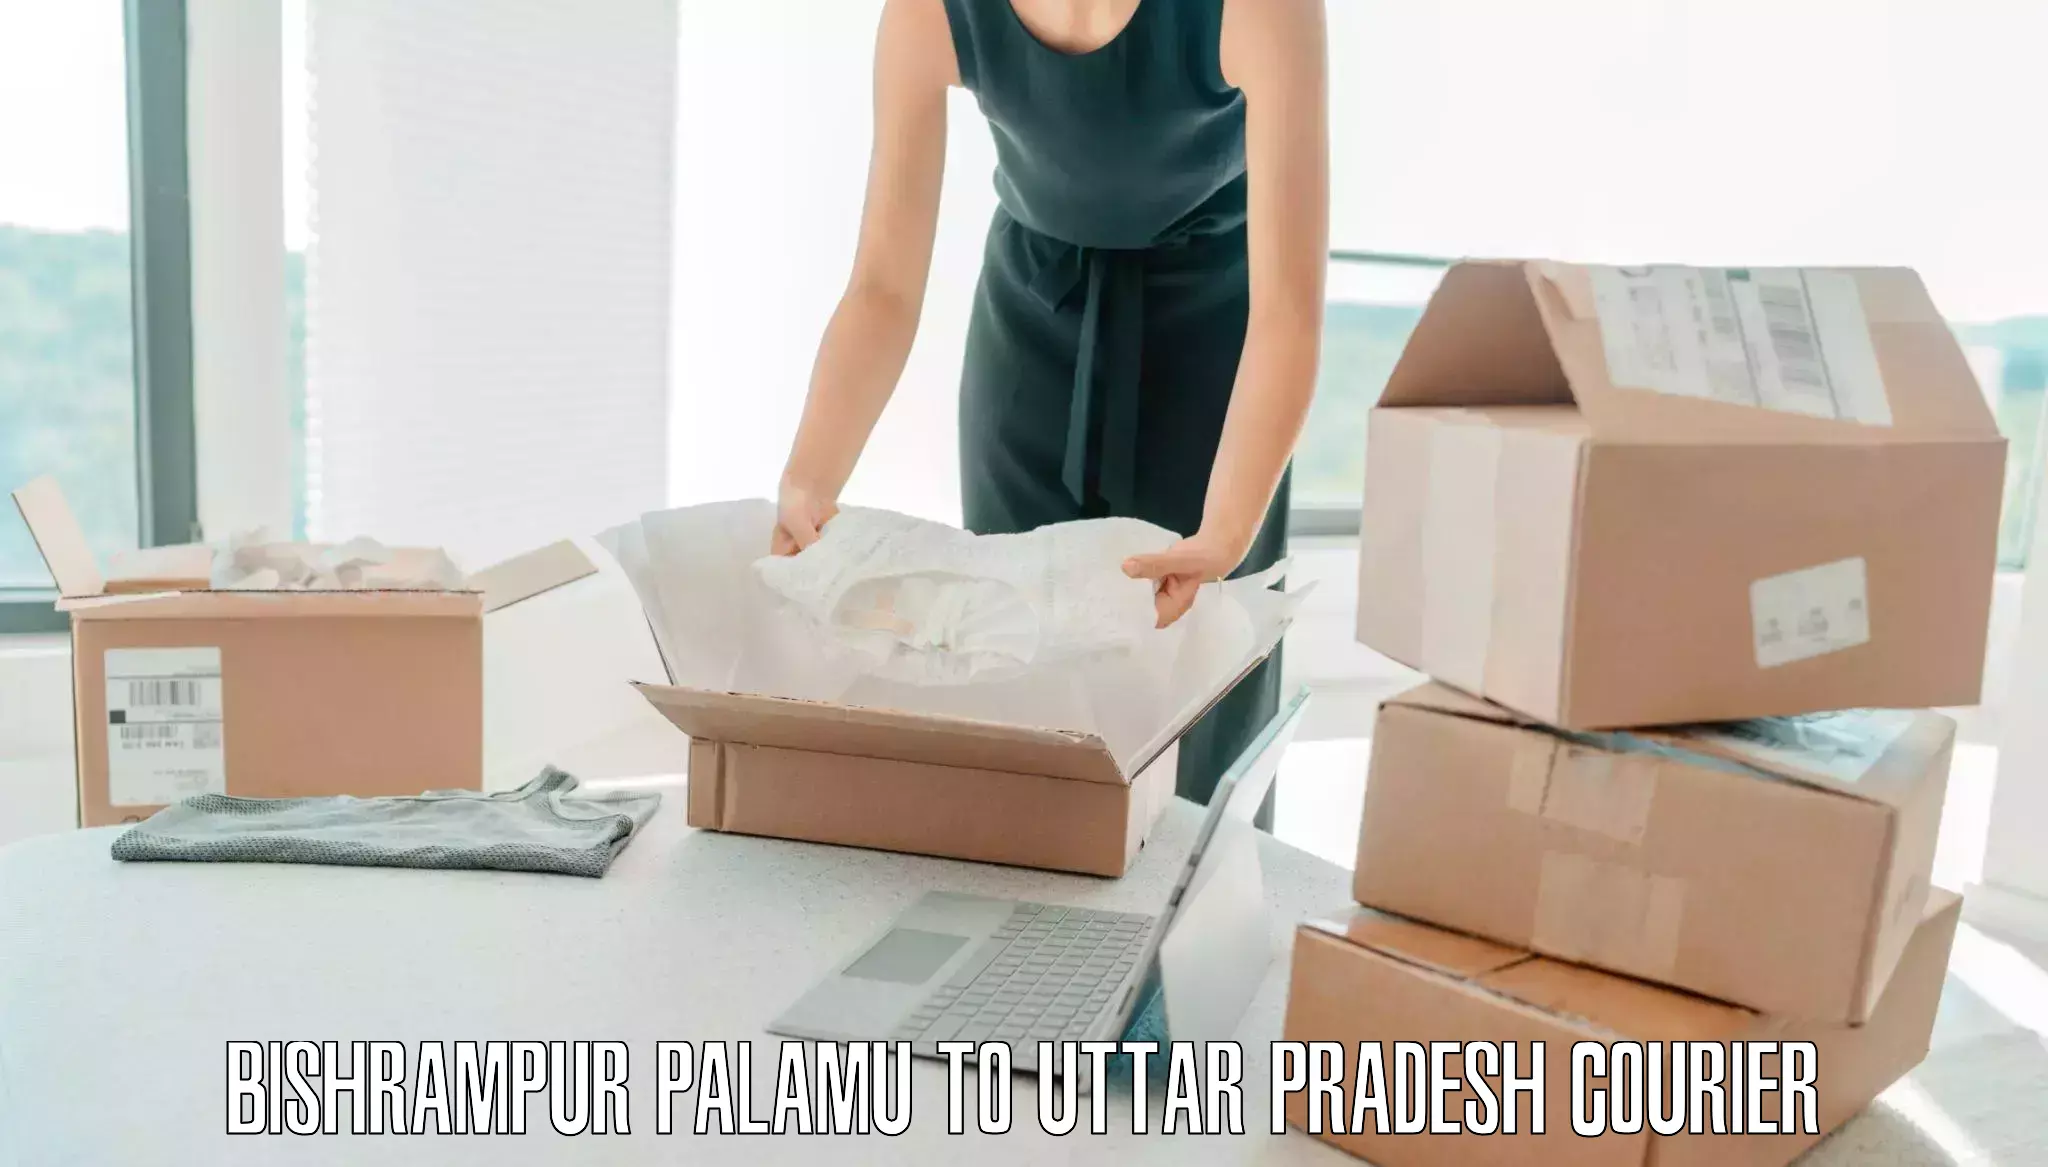 Baggage courier service Bishrampur Palamu to Uttar Pradesh